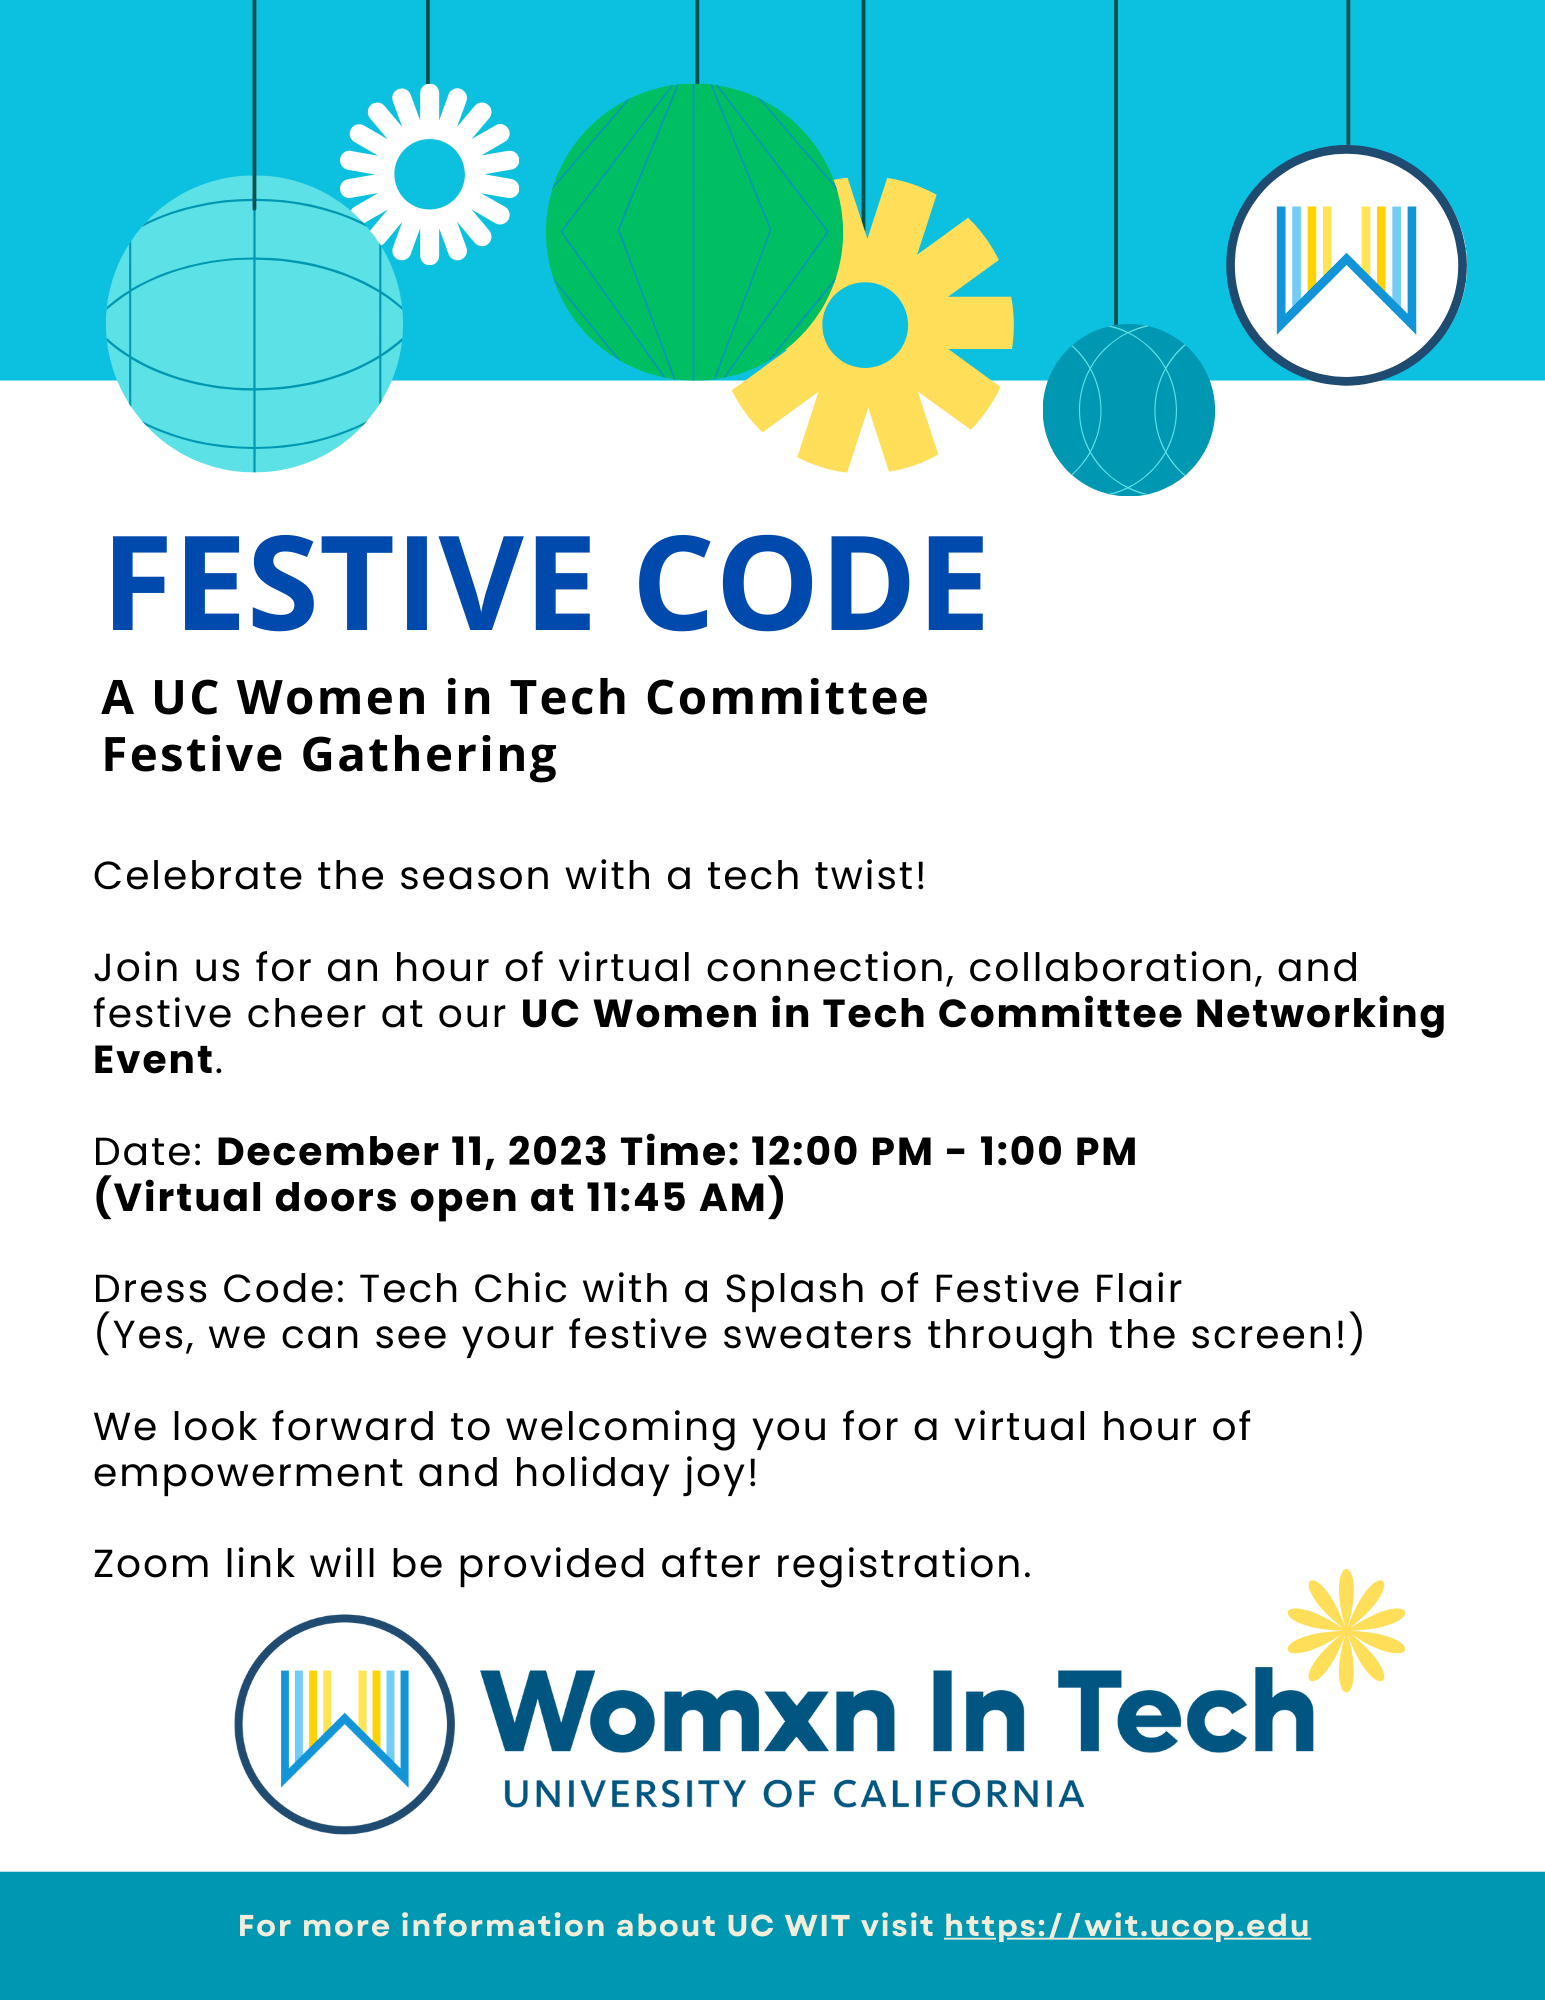 Festive Code - A UC Women in Tech Committee  Festive Gathering